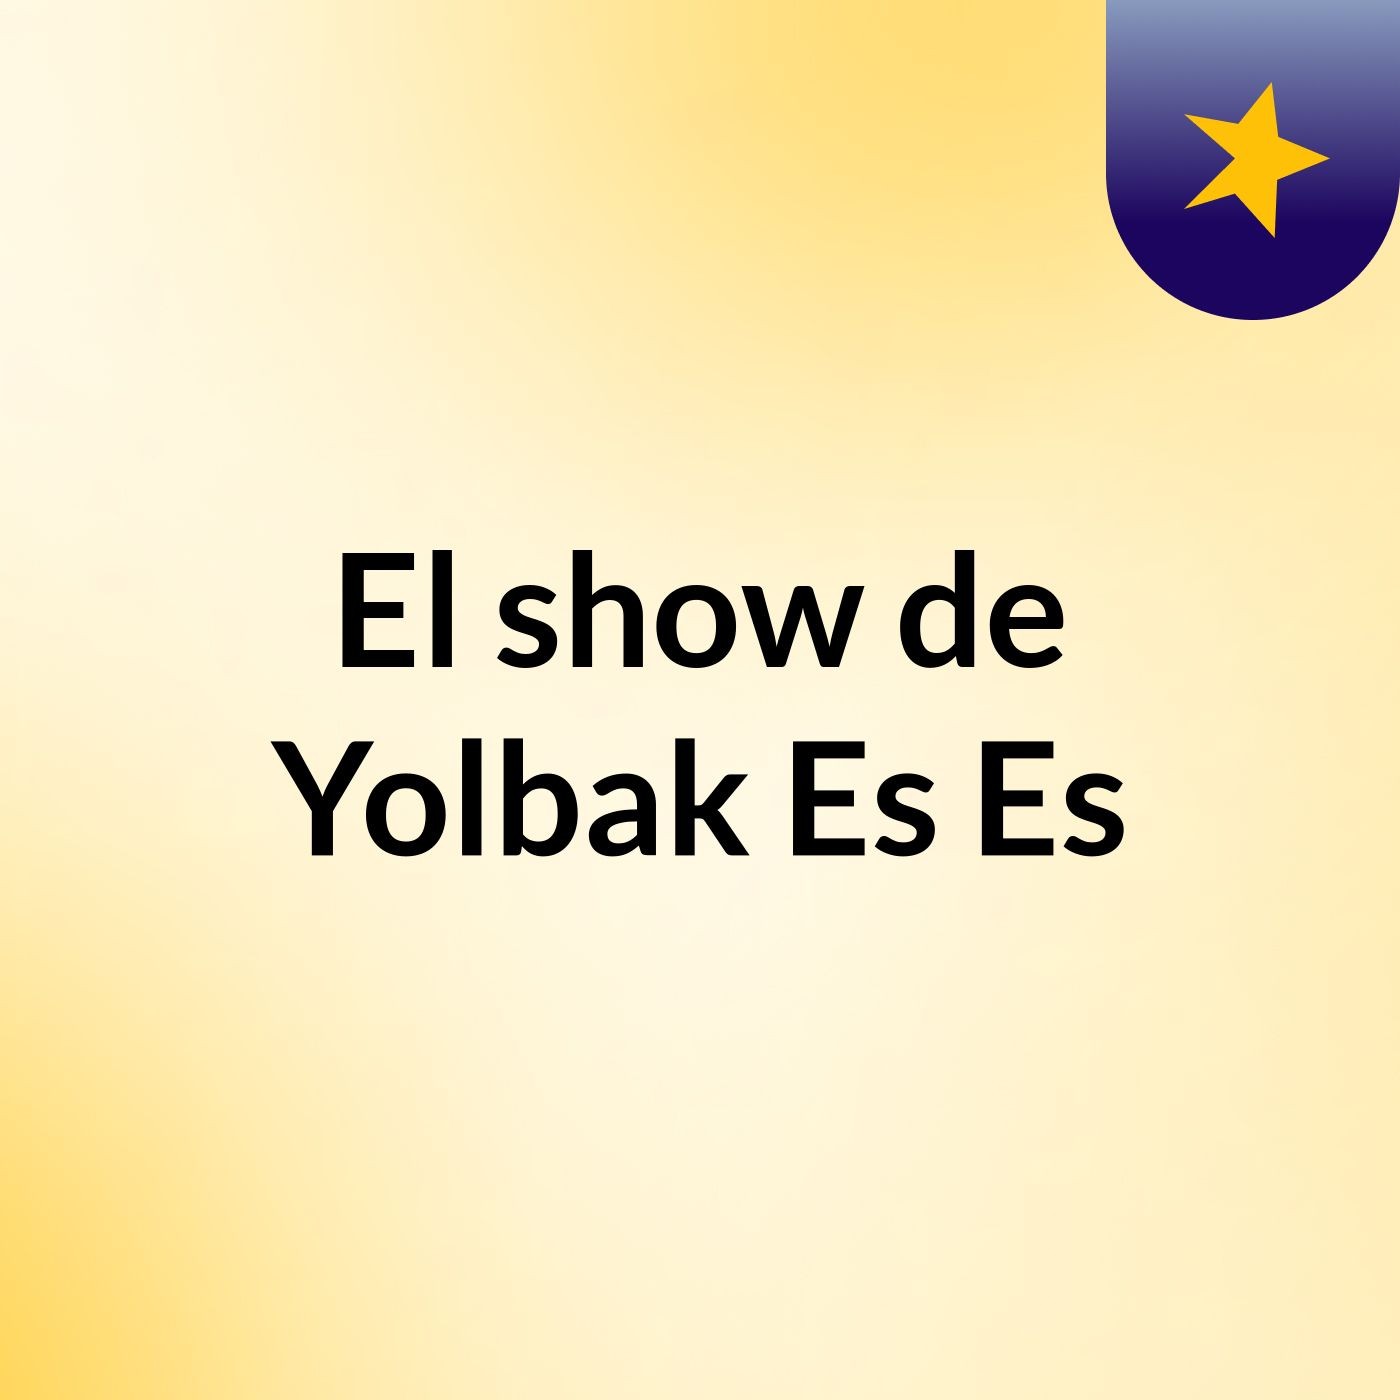 El show de Yolbak Es Es